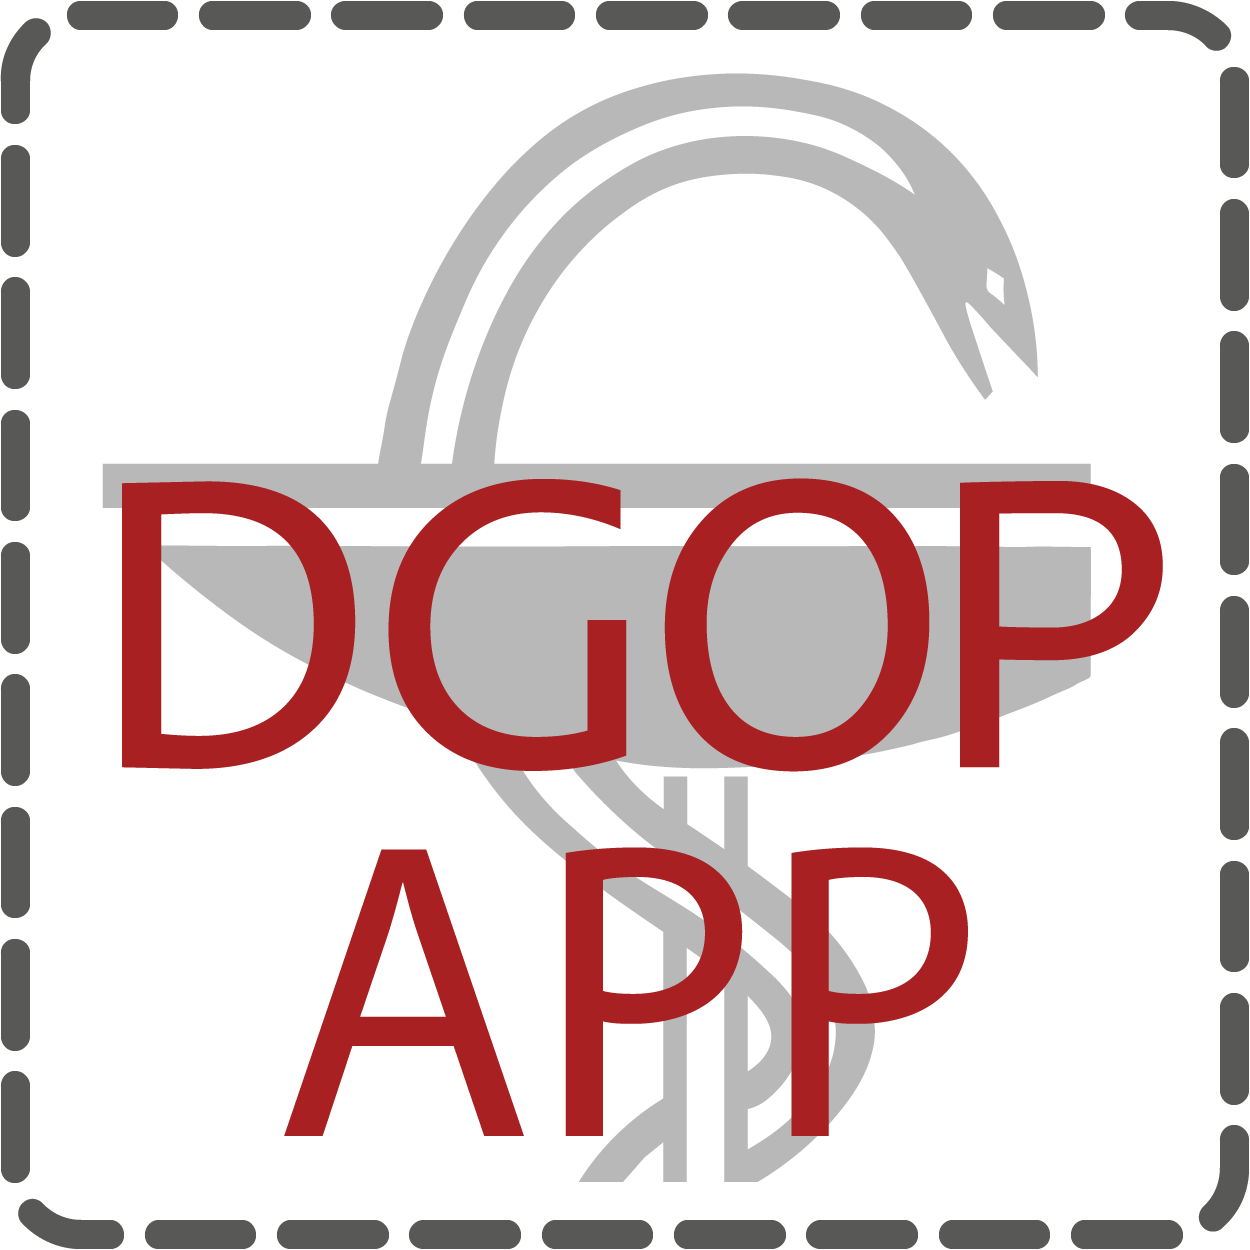 DGOP App